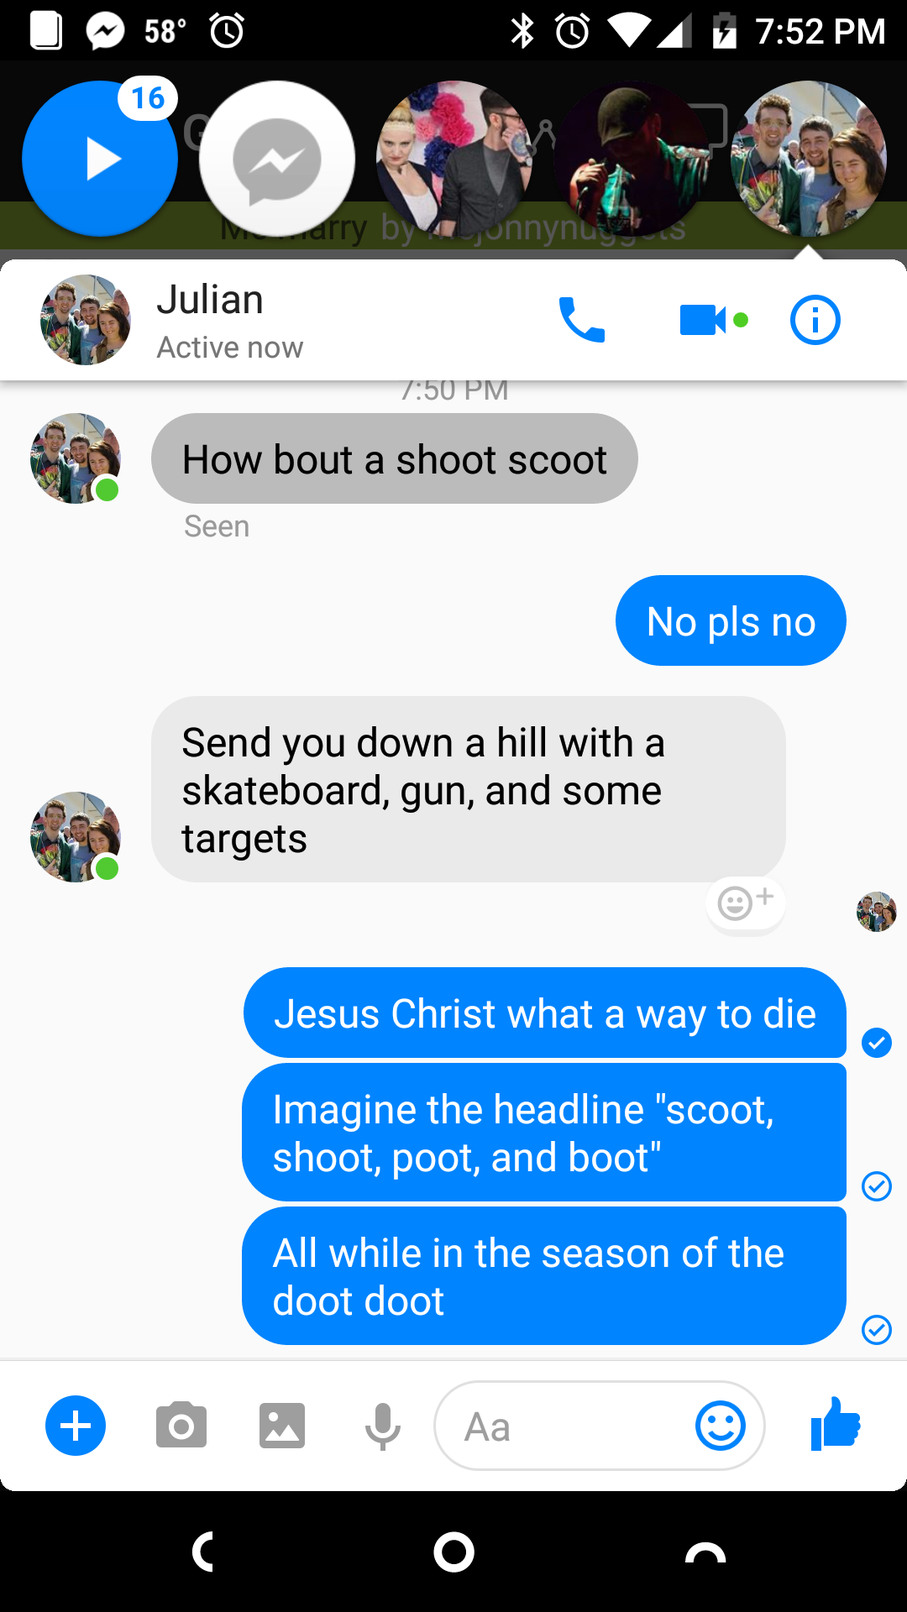 Shoot scoot toot boot doot - meme